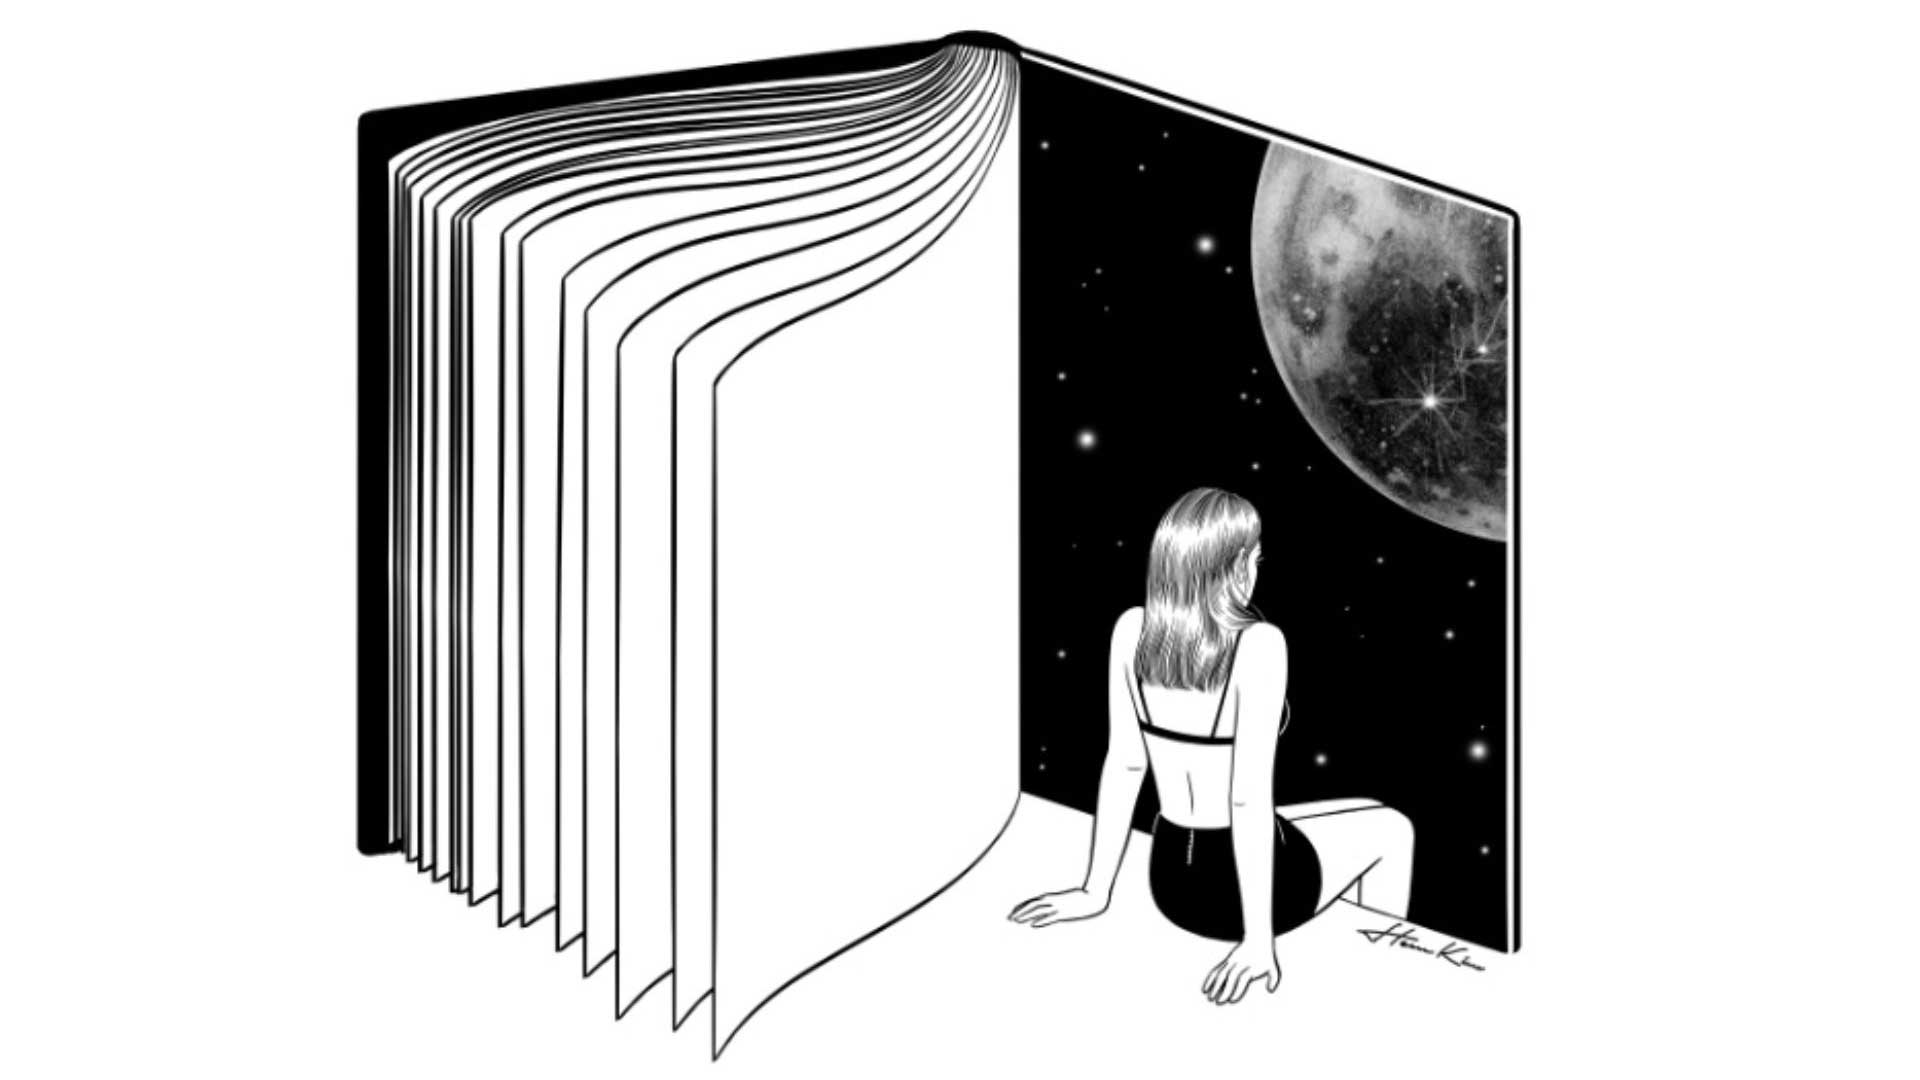 σκίτσο ενός βιβλίου με μία νάρκισσο κοπέλα να κάθεται σε μία σελίδα και να κοιτάζει το σύμπαν της εποχής